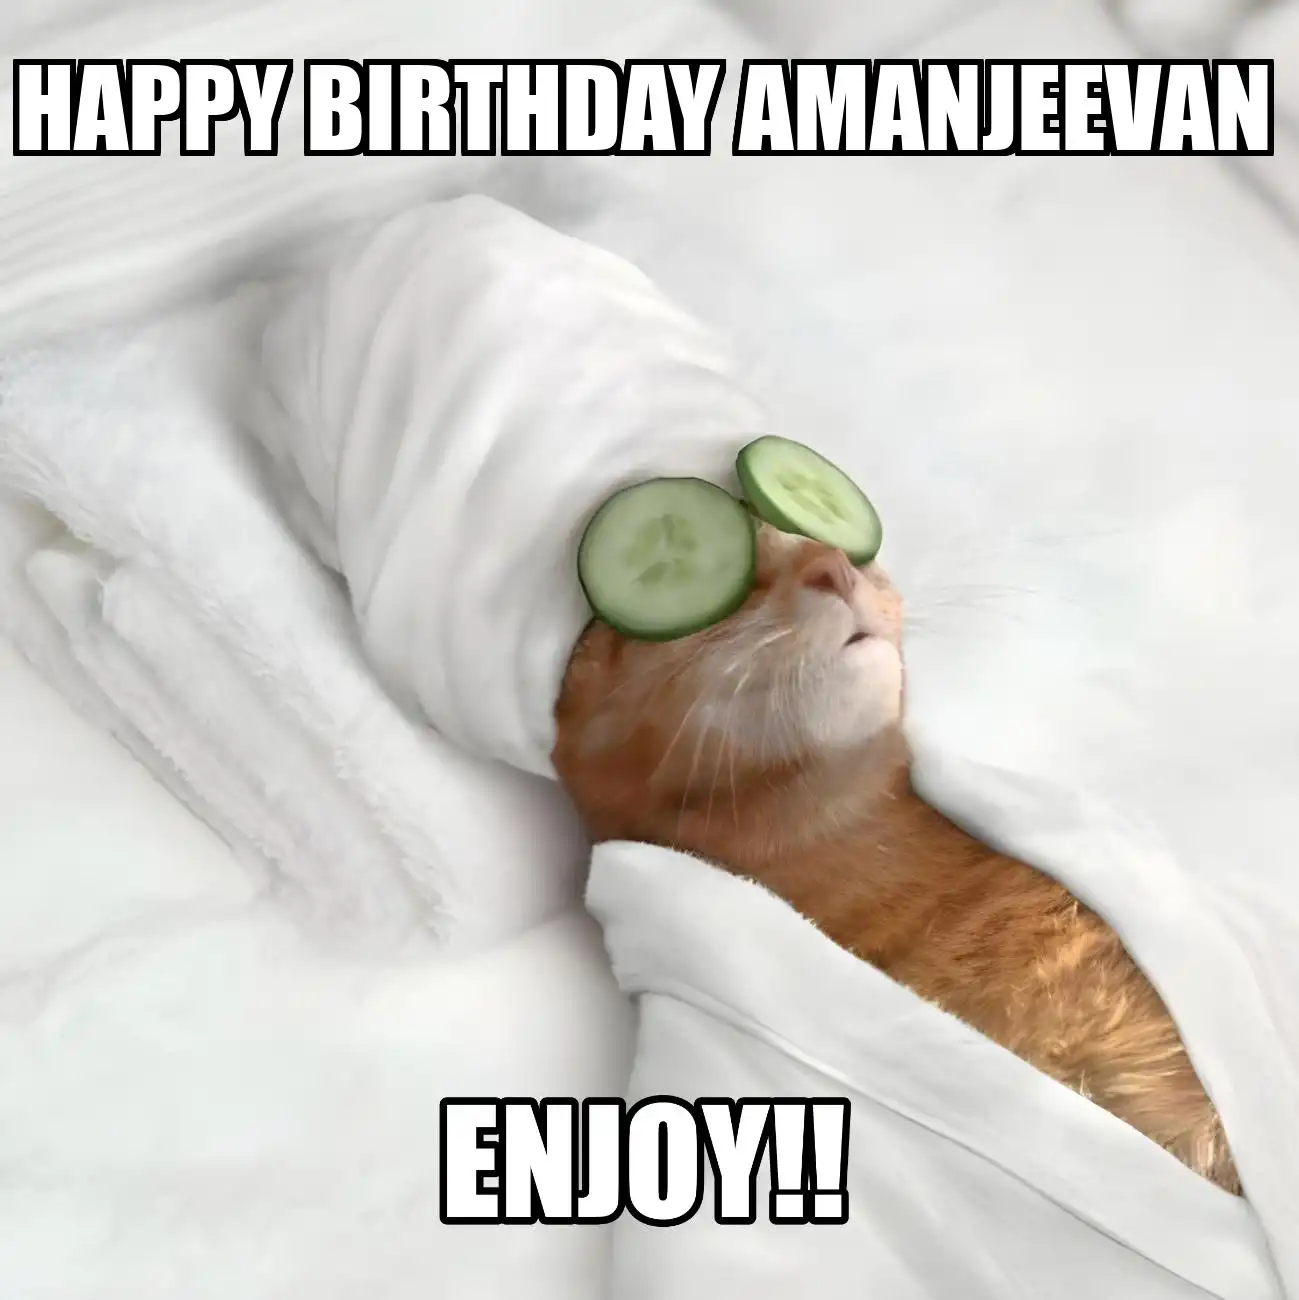 Happy Birthday Amanjeevan Enjoy Cat Meme